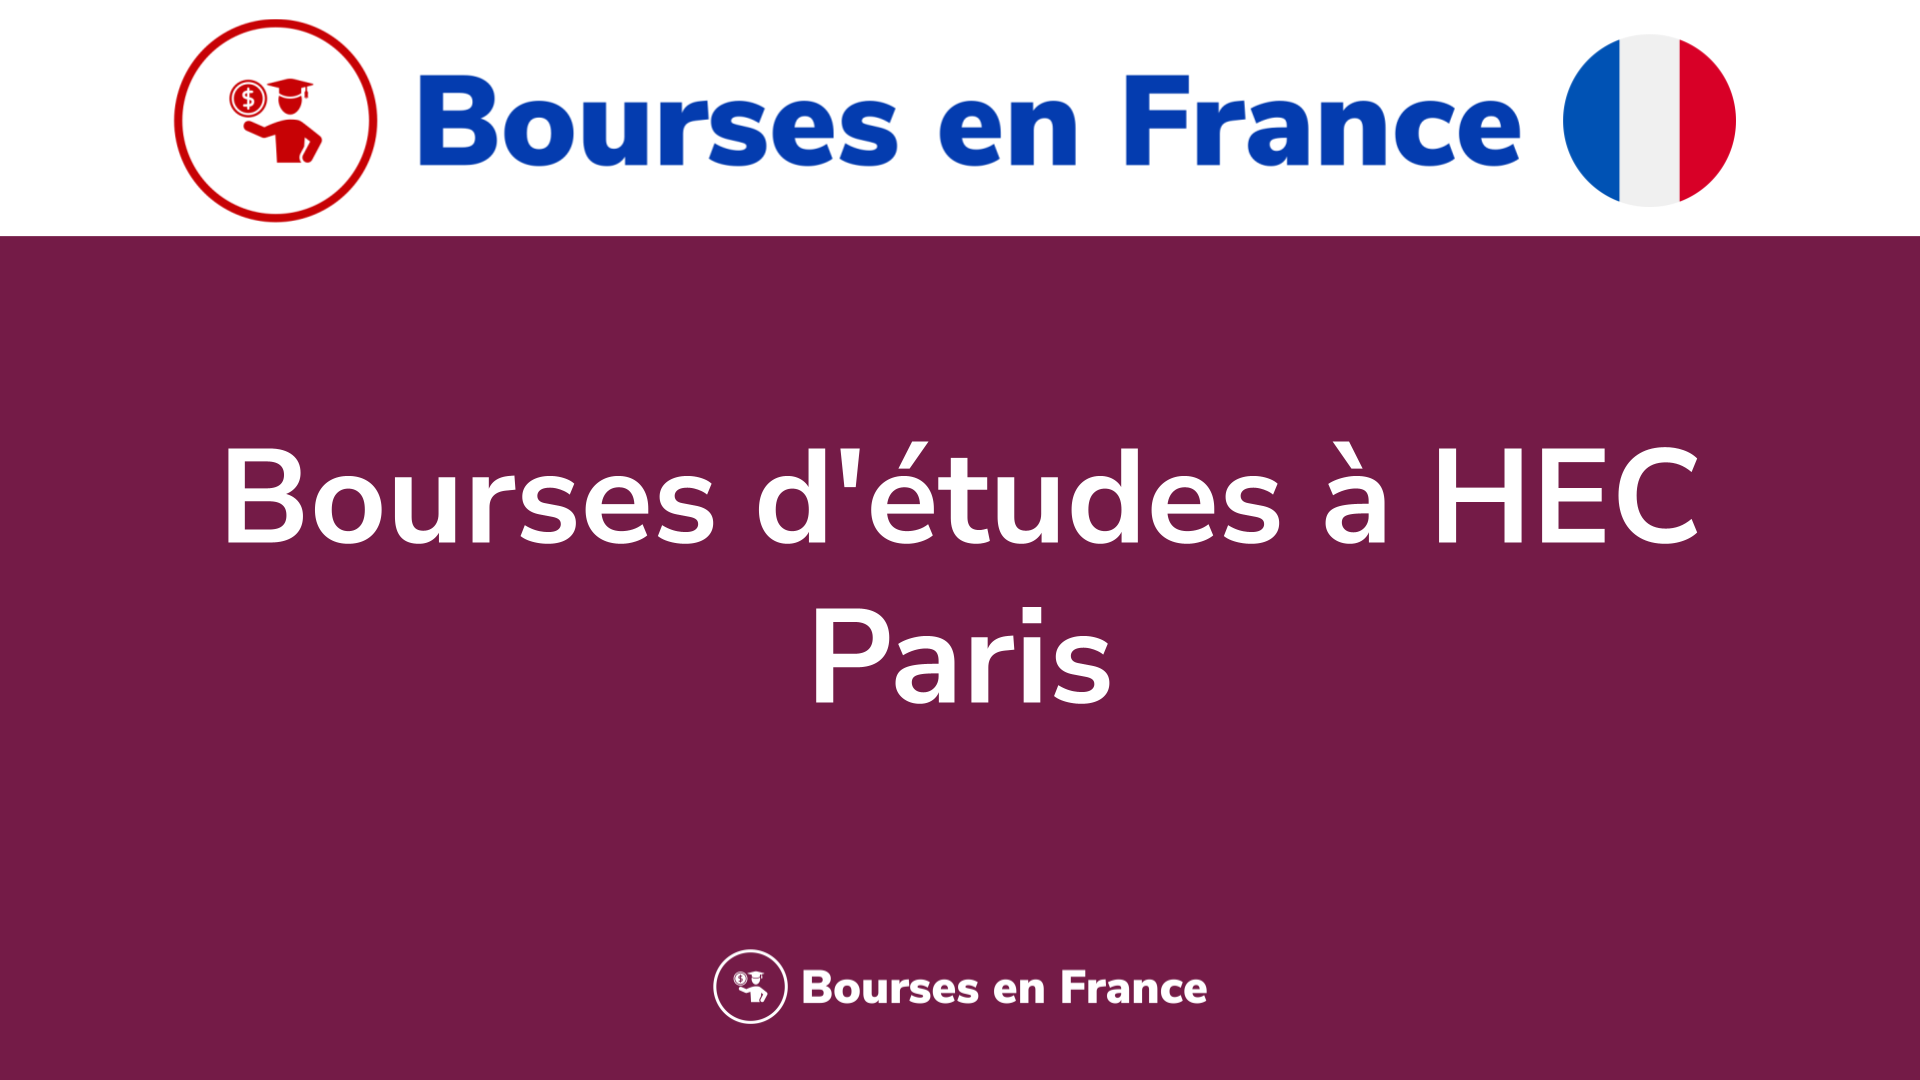 Bourses d'études à HEC Paris